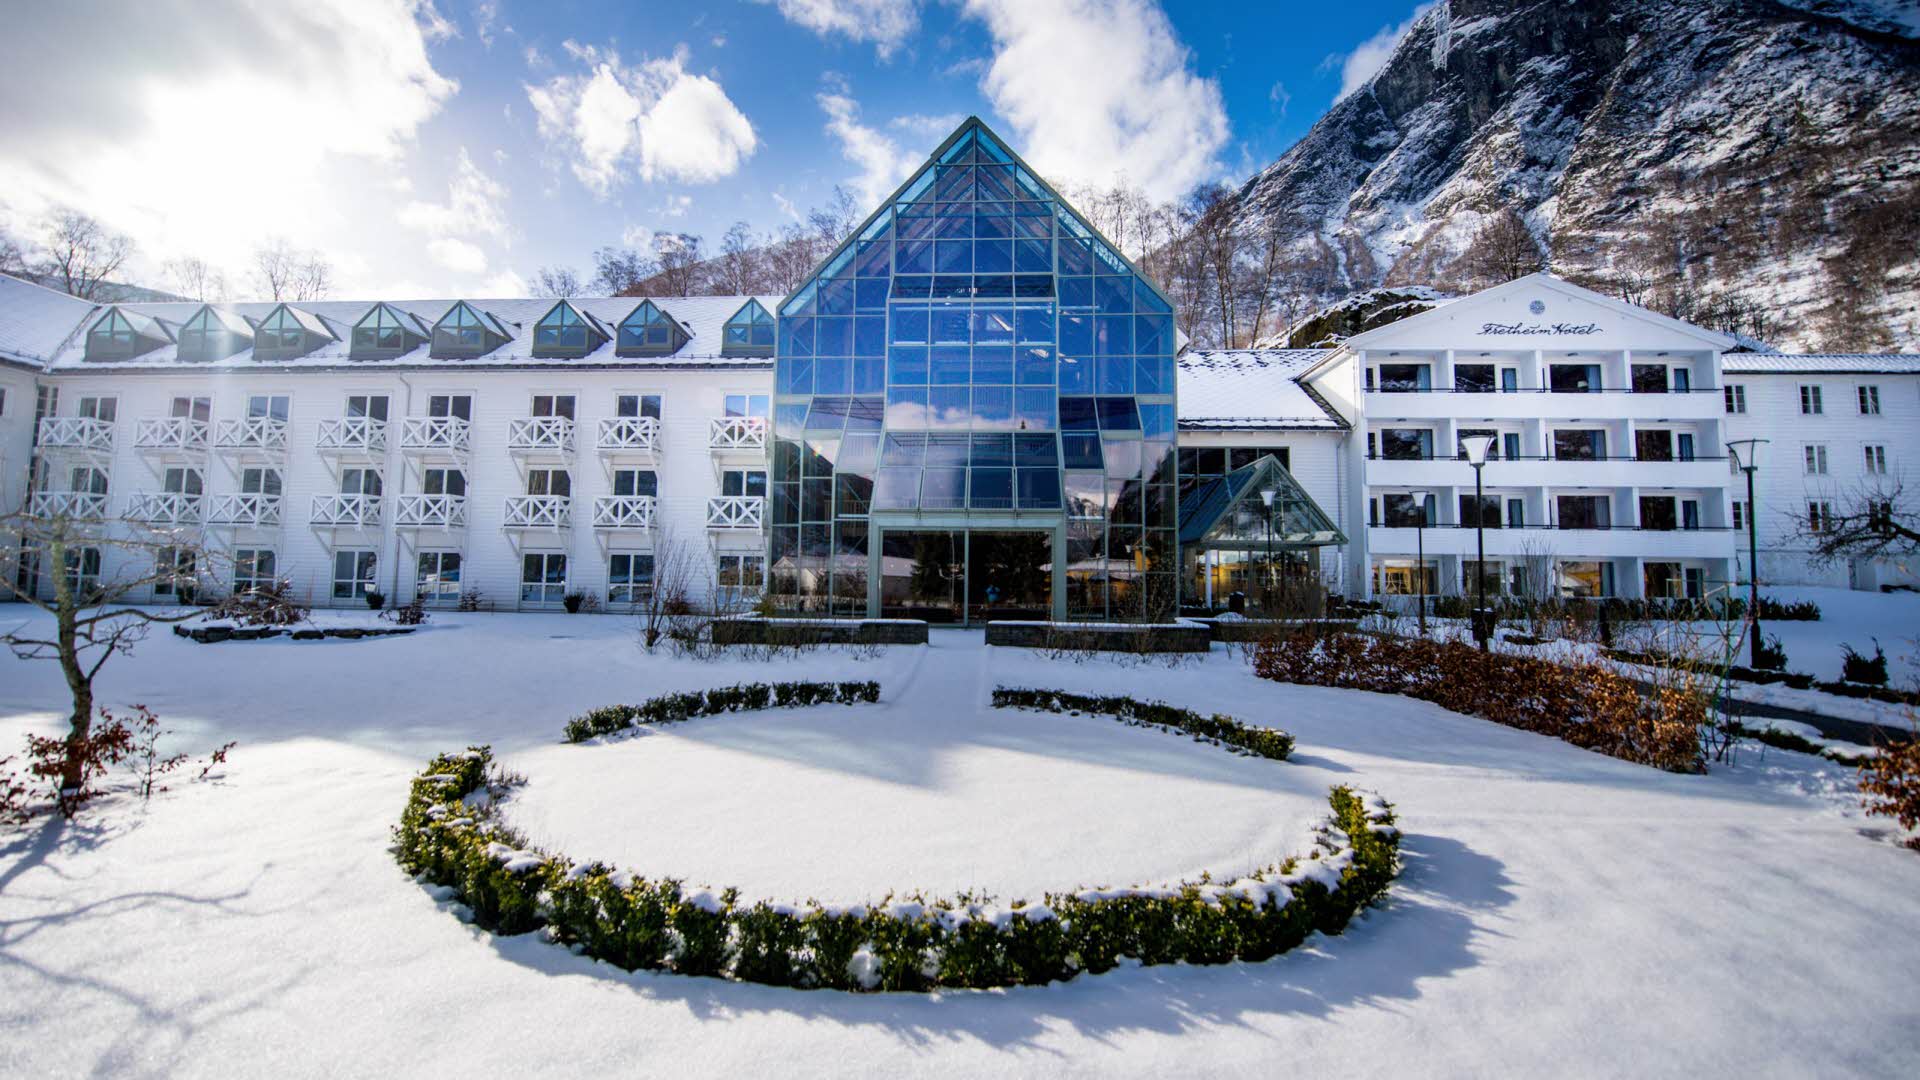 从白雪覆盖的花园看佛莱姆酒店 (Fretheim Hotel)。背景里是蓝天和小块云朵。